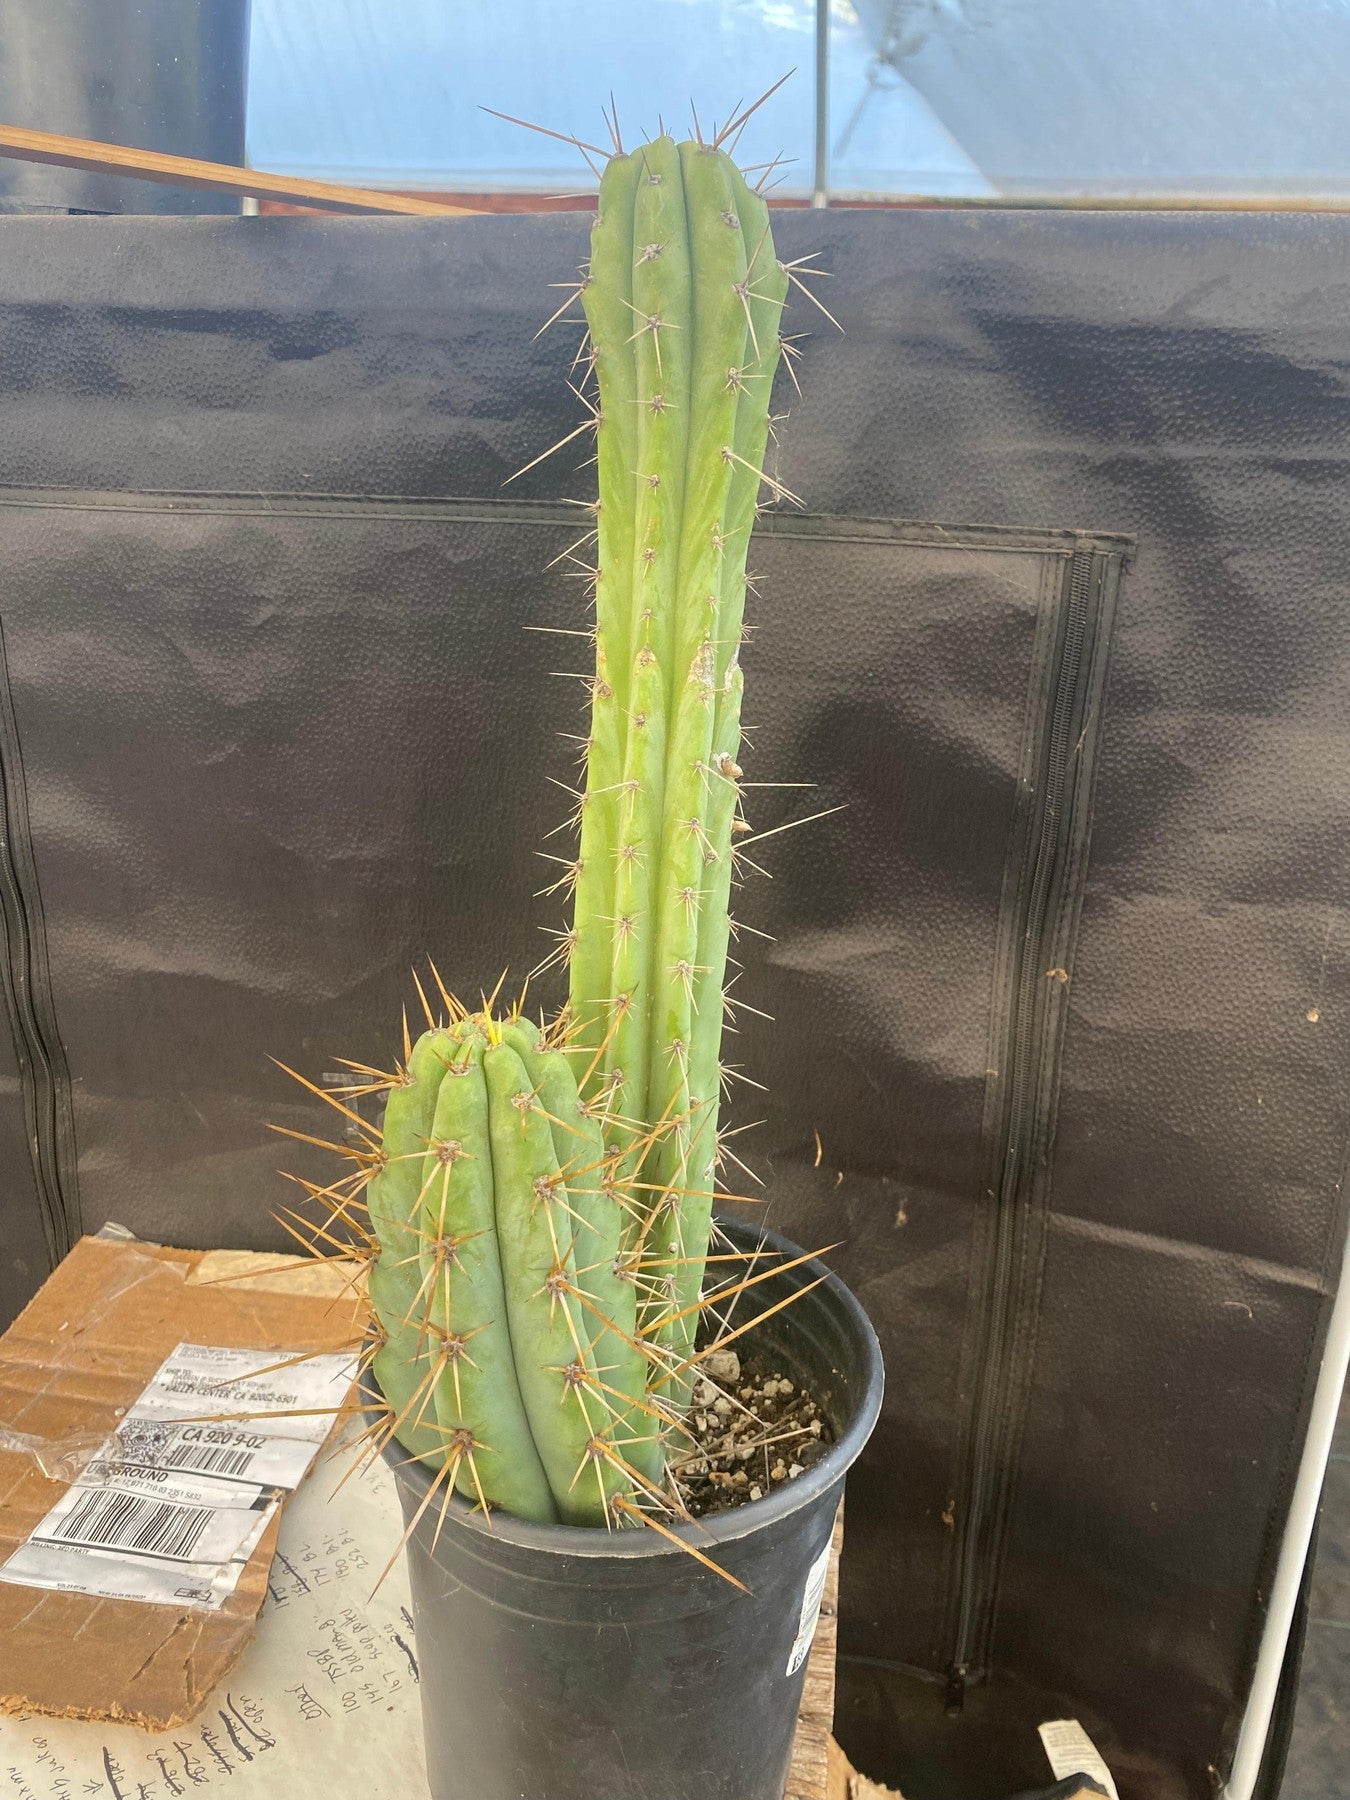 #EC51 EXACT Trichocereus Hybrid Bridgesii Psycho OP Cactus Cutting 17”-Cactus - Large - Exact-The Succulent Source